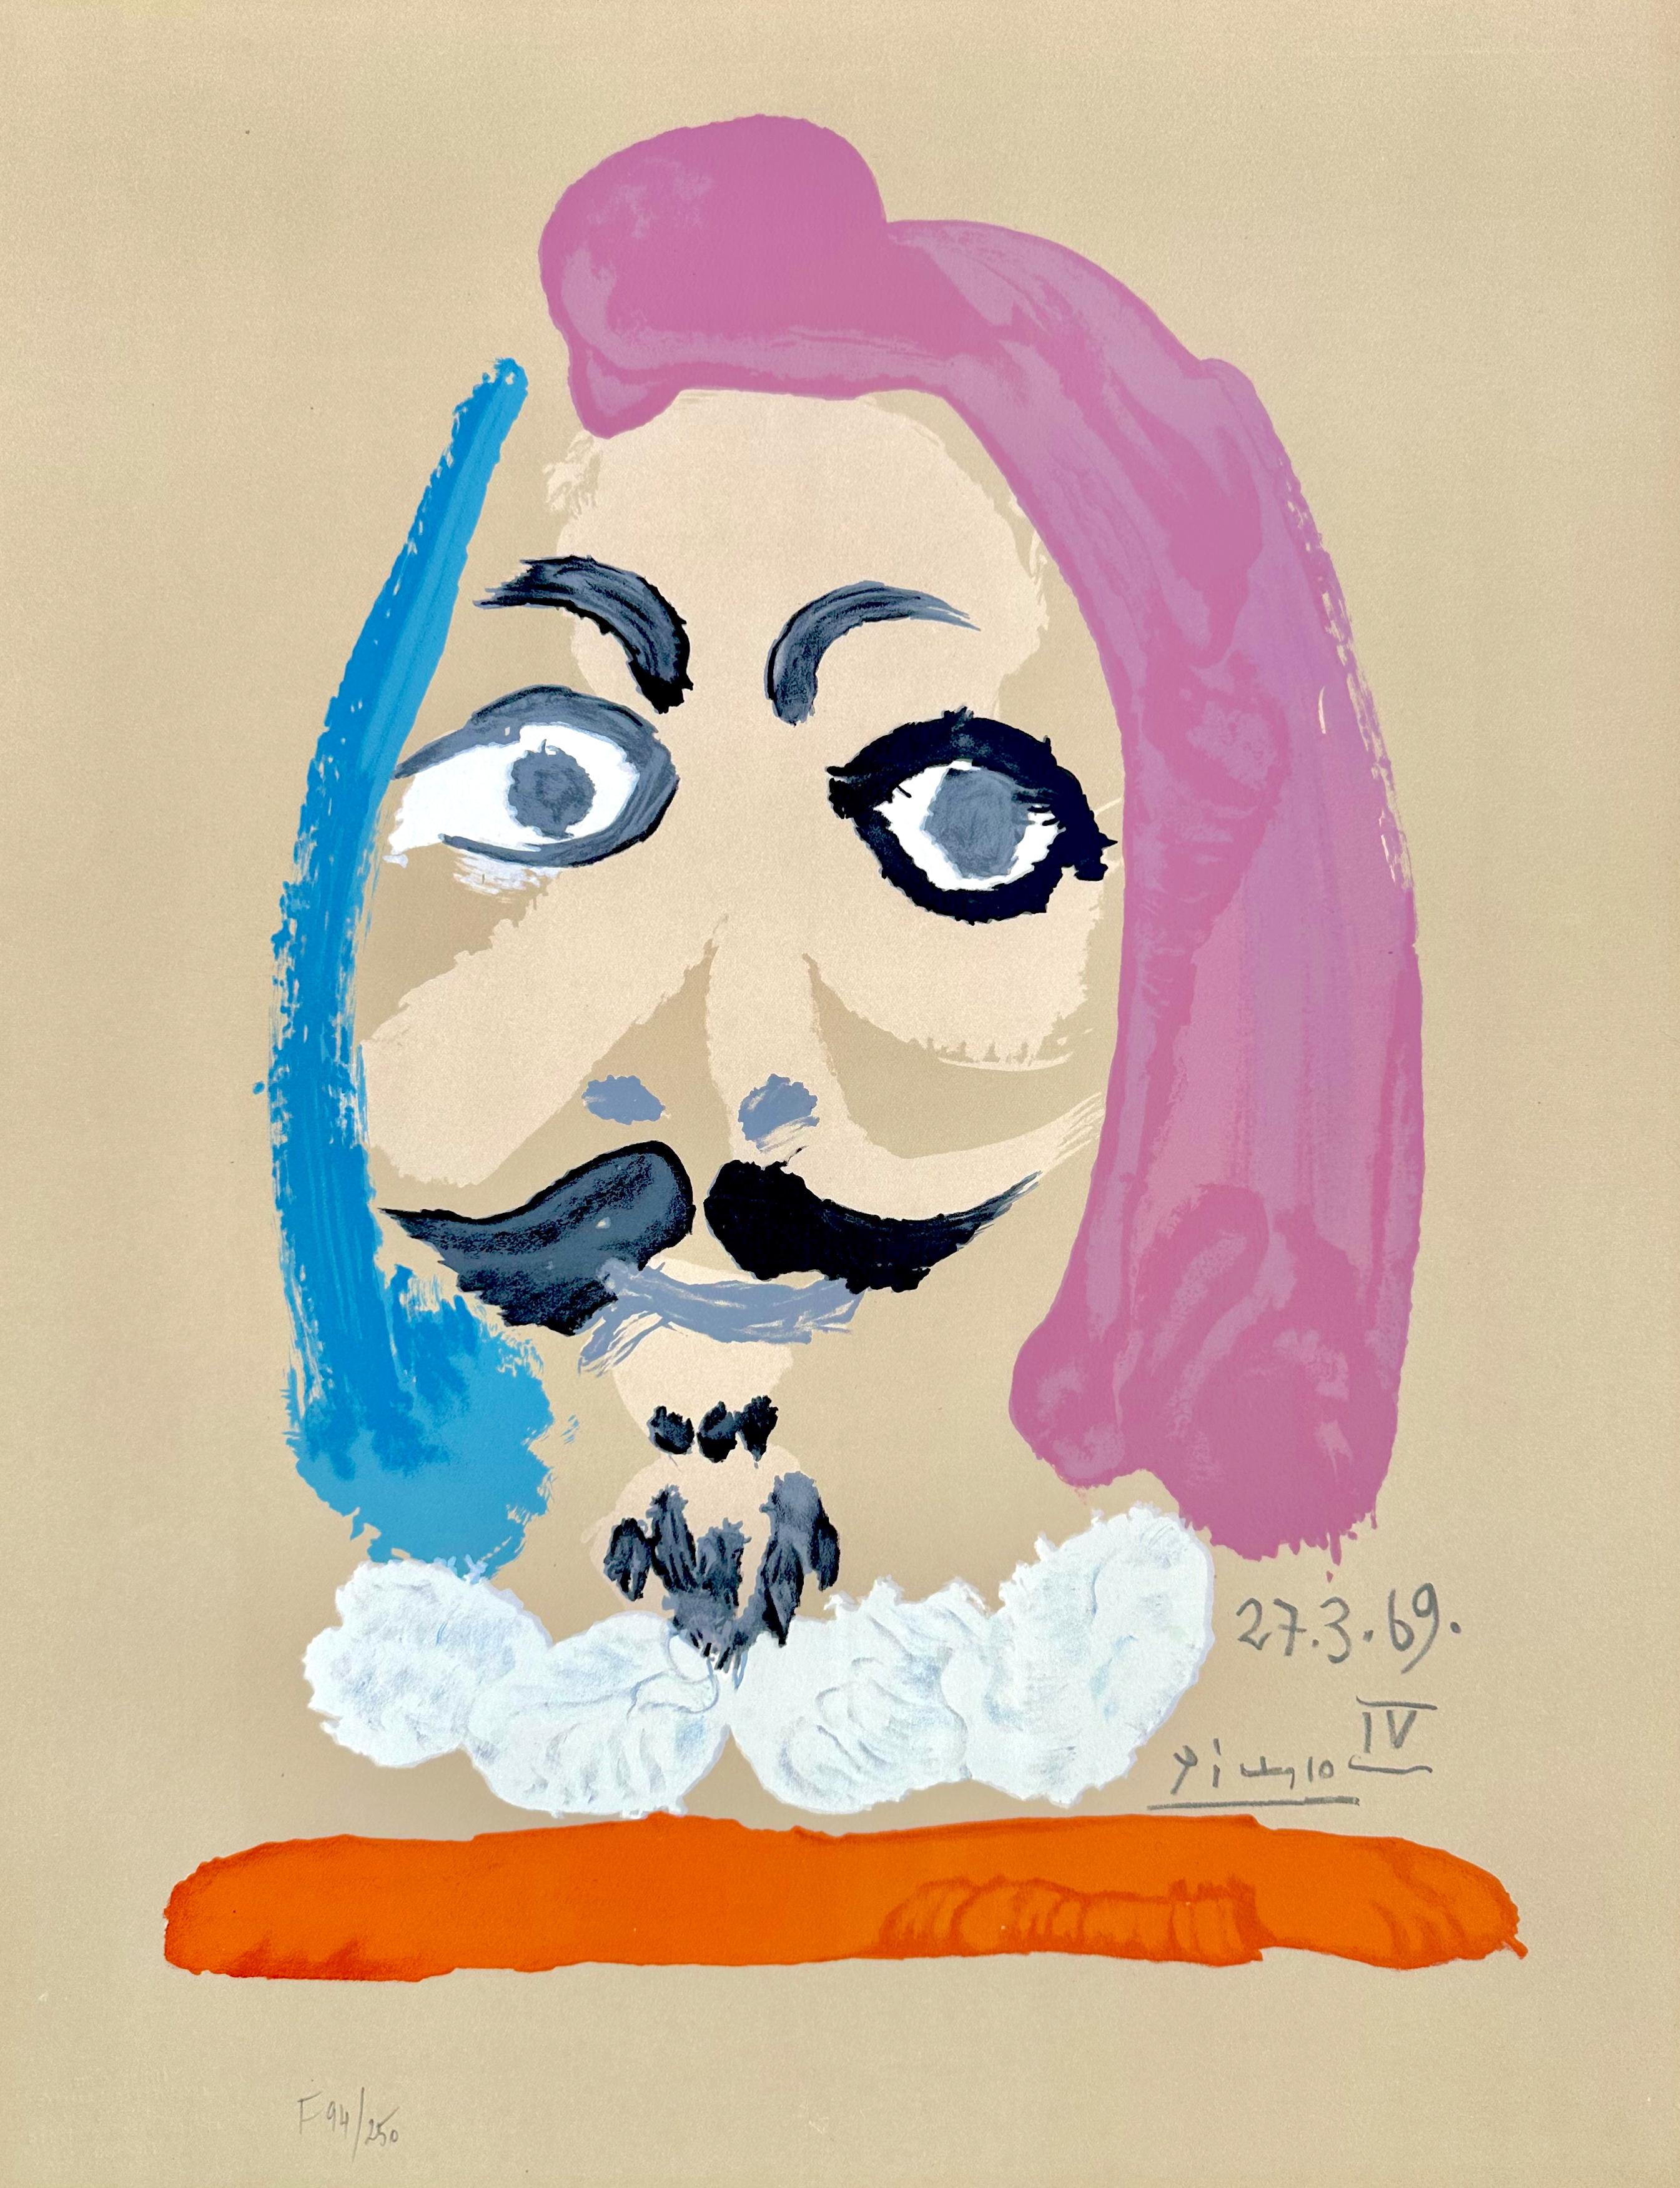 Pablo Picasso Figurative Print - Portraits Imaginaires 27.3.69 IV